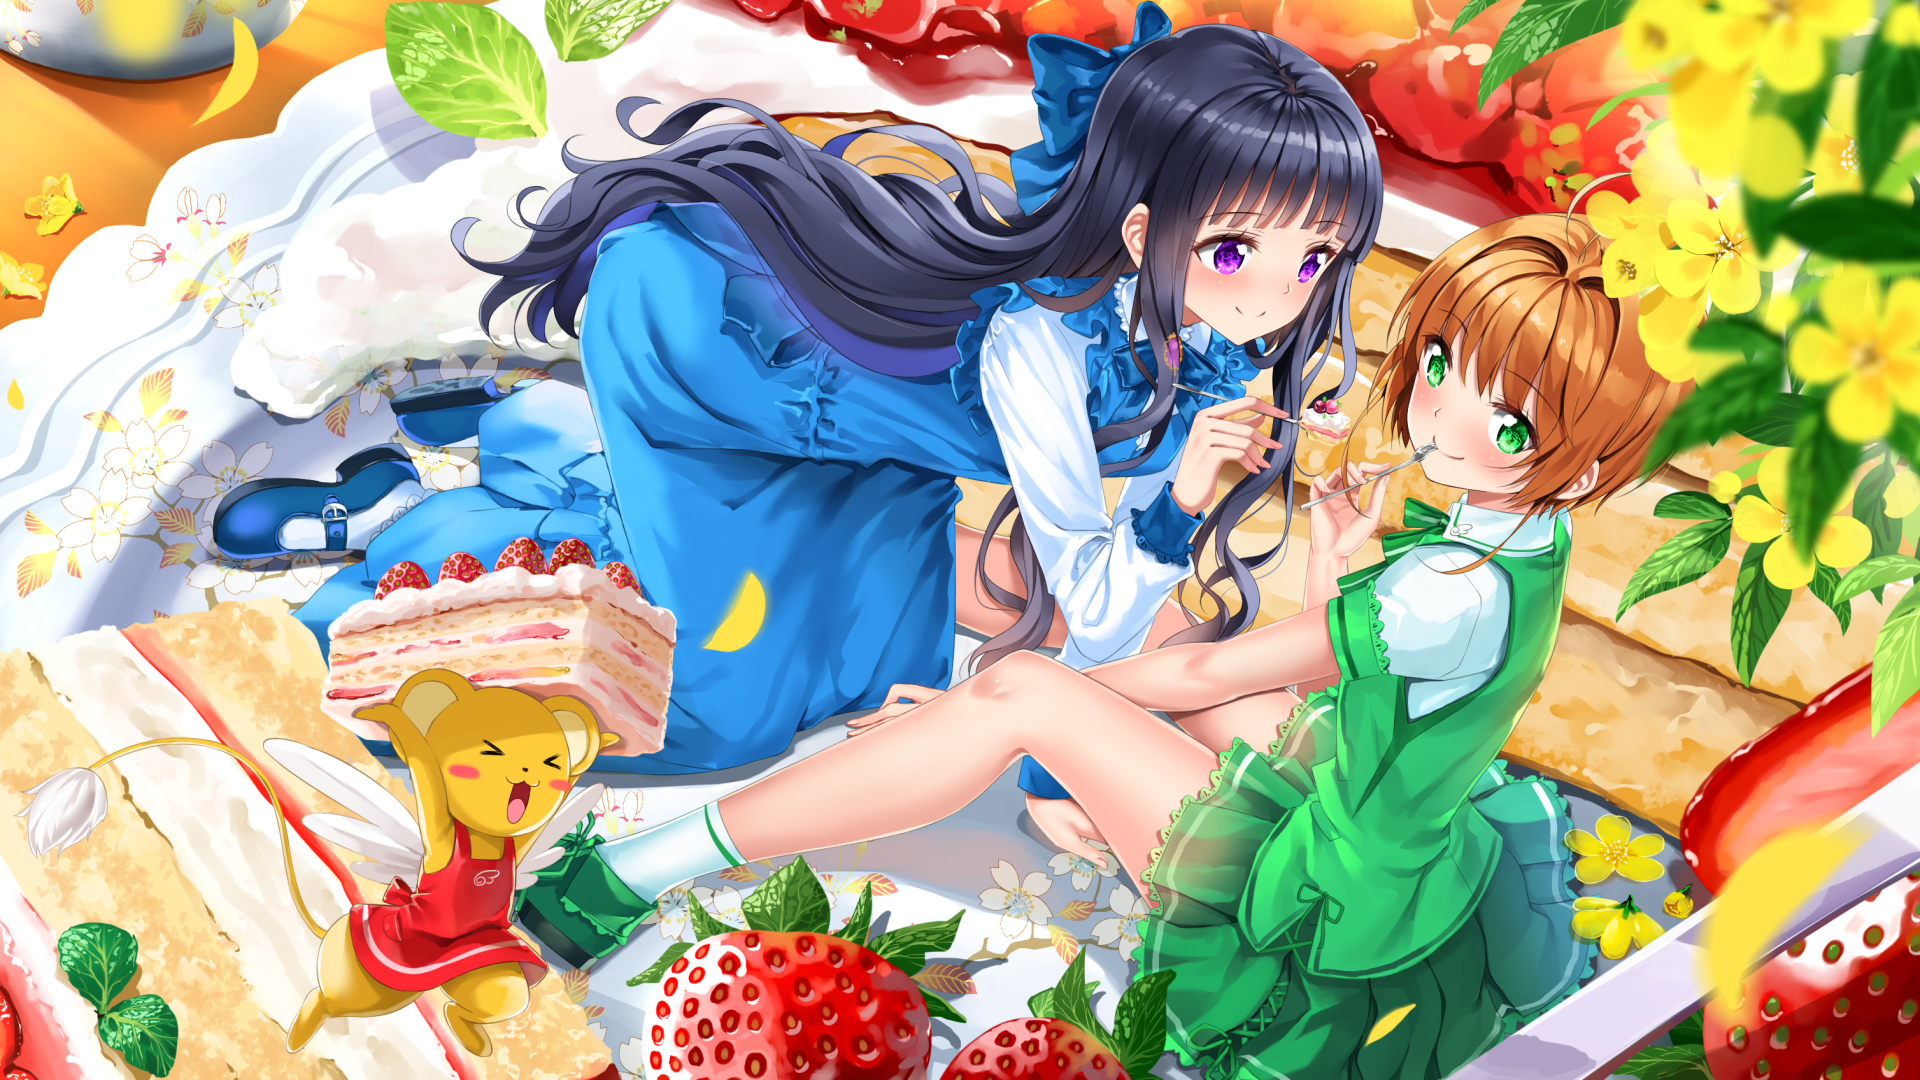 Anime 1920x1080 anime girls colorful eating picnic Cardcaptor Sakura Kinomoto Sakura Daidouji Tomoyo Swordsouls